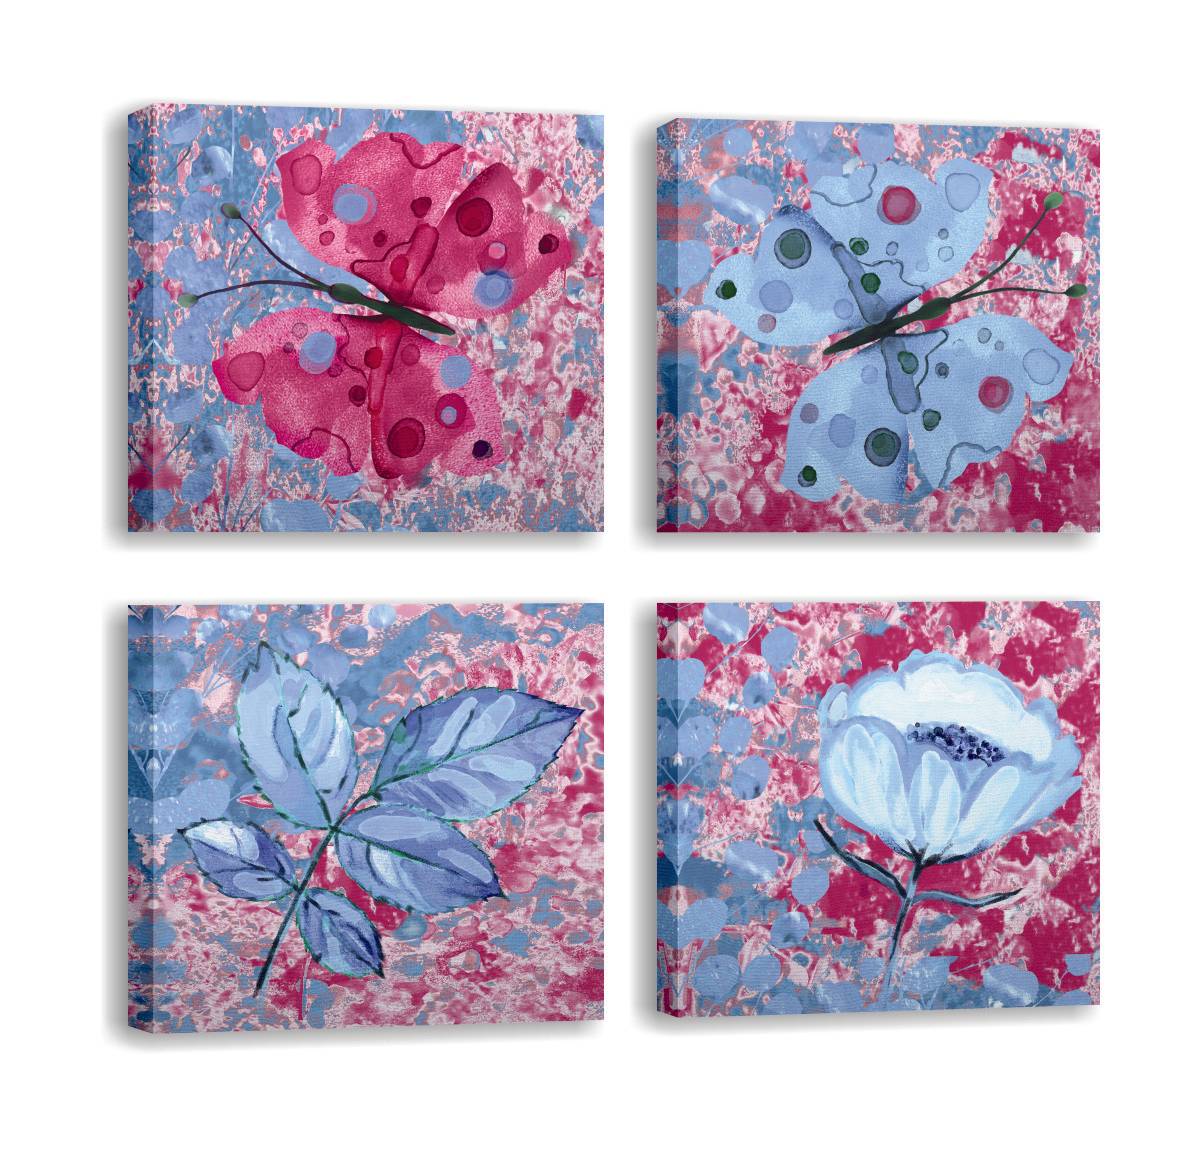 Lot von 4 Pictura-Gemälden 30x30cm Blau und Fuchsia Schmetterlings- und Blumenmotiv